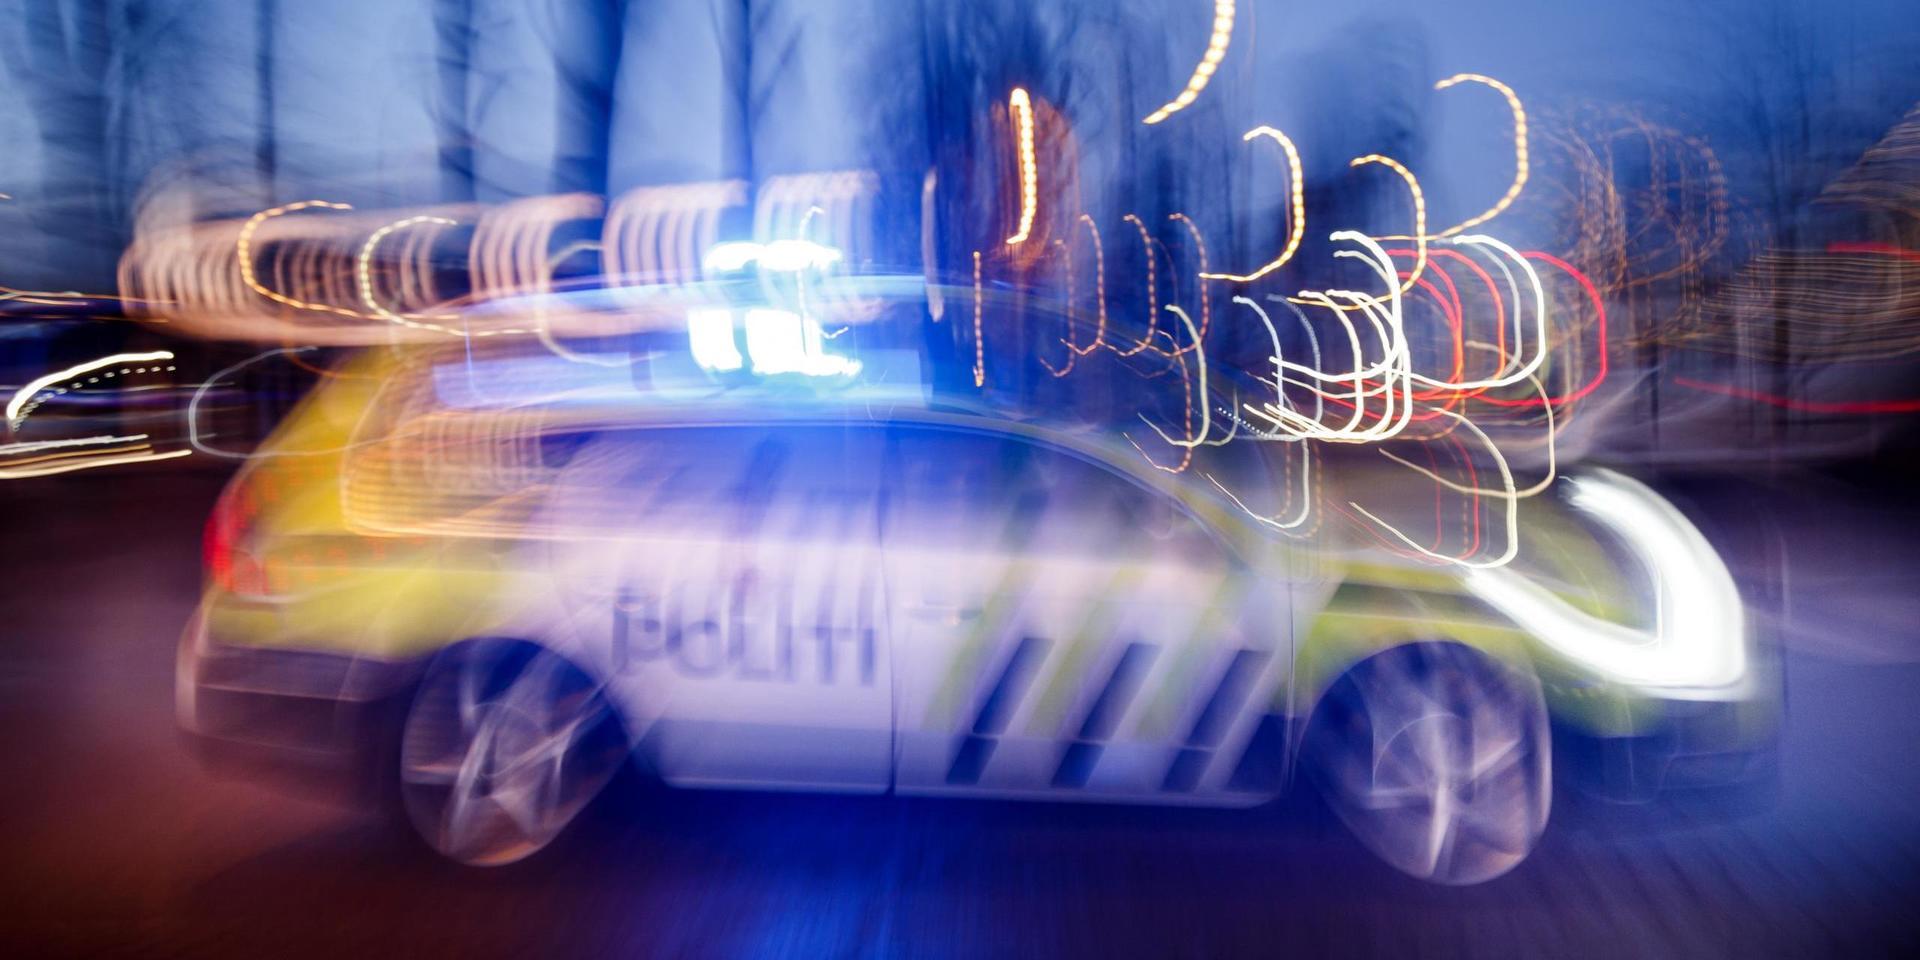 SKI  20161213.Politiet i arbeid. Politibil med blålys i fart. NB! Modellklarert til redaksjonell bruk. Foto: Heiko Junge / NTB